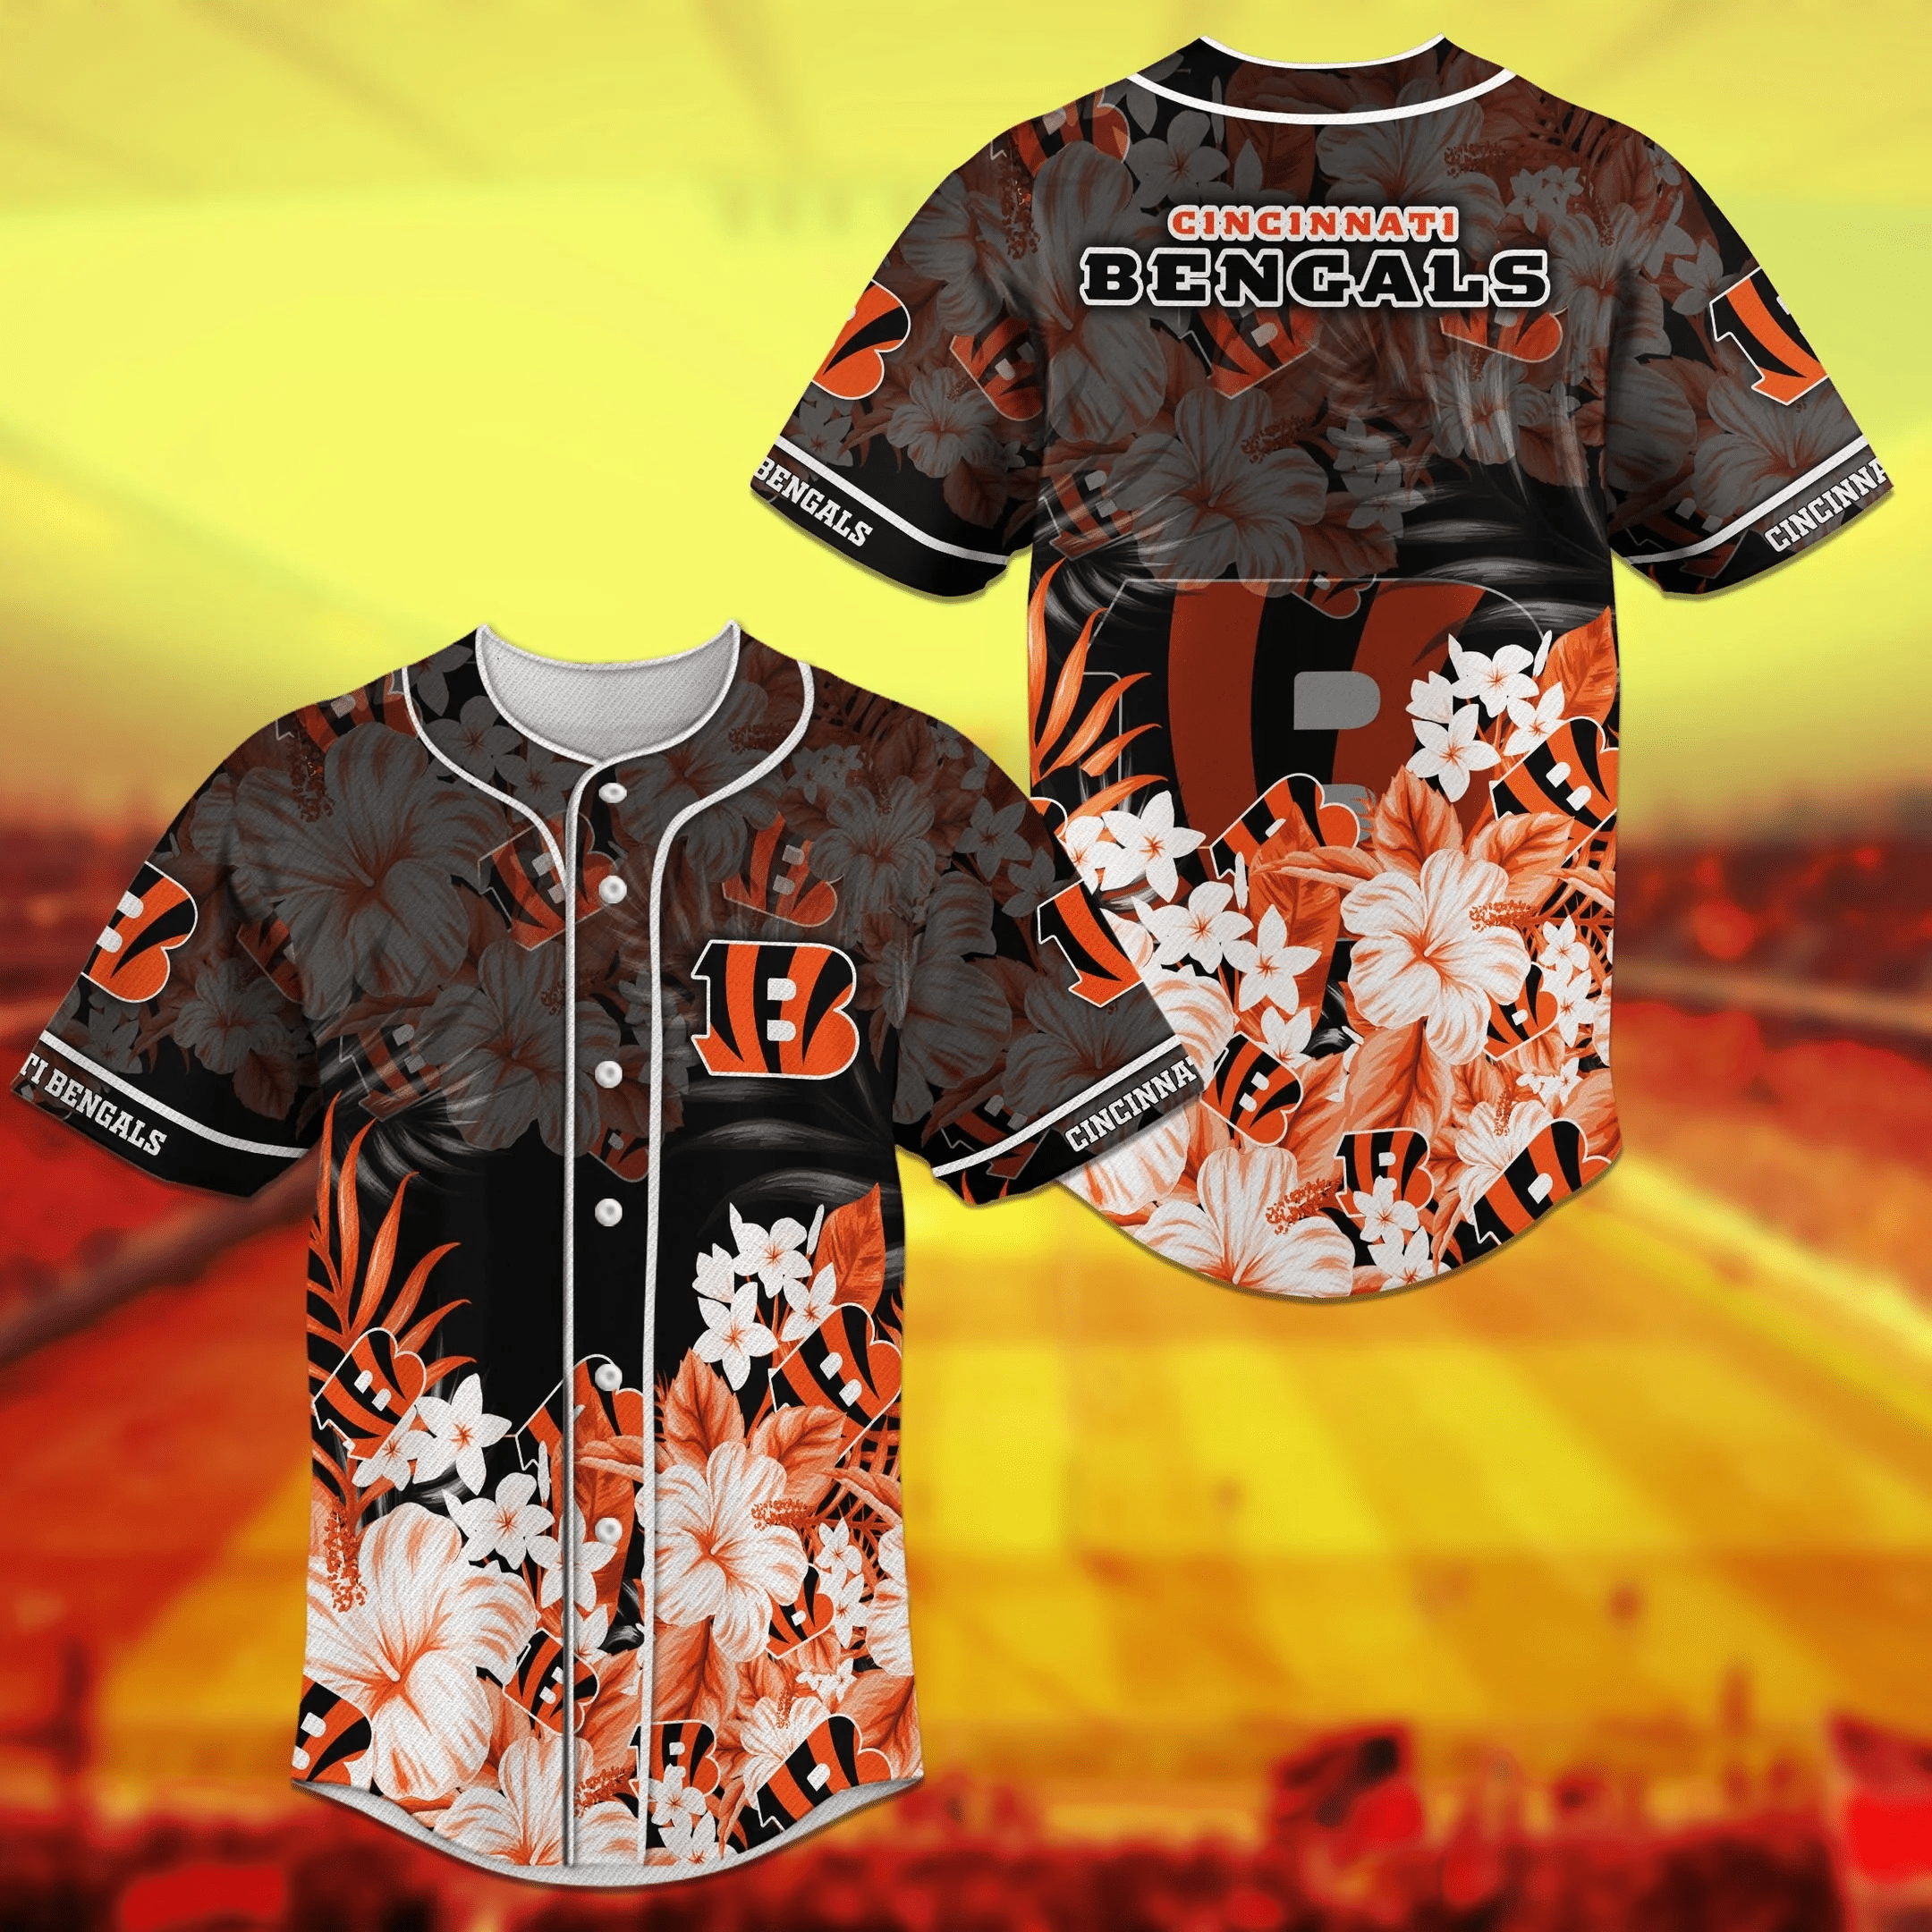 Cincinnati Bengals NFL Baseball Jersey Shirt with Flower Design